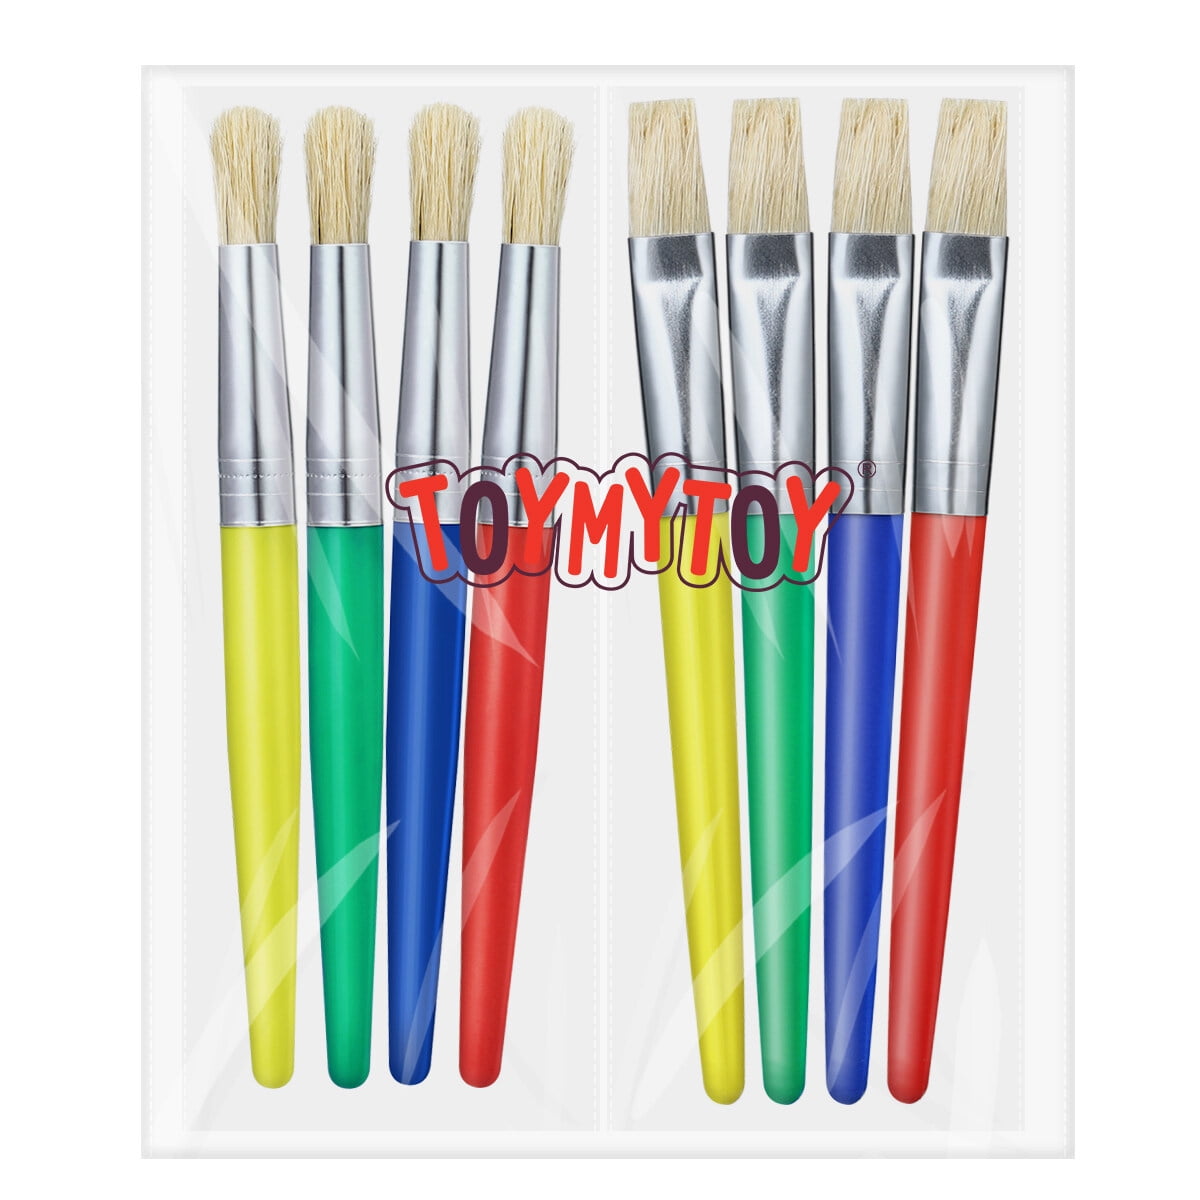 Kids Paint Stobok DIY Painting Brush Set Children's Paint Kids Paint Tool Kit for Beginner Painting Practice